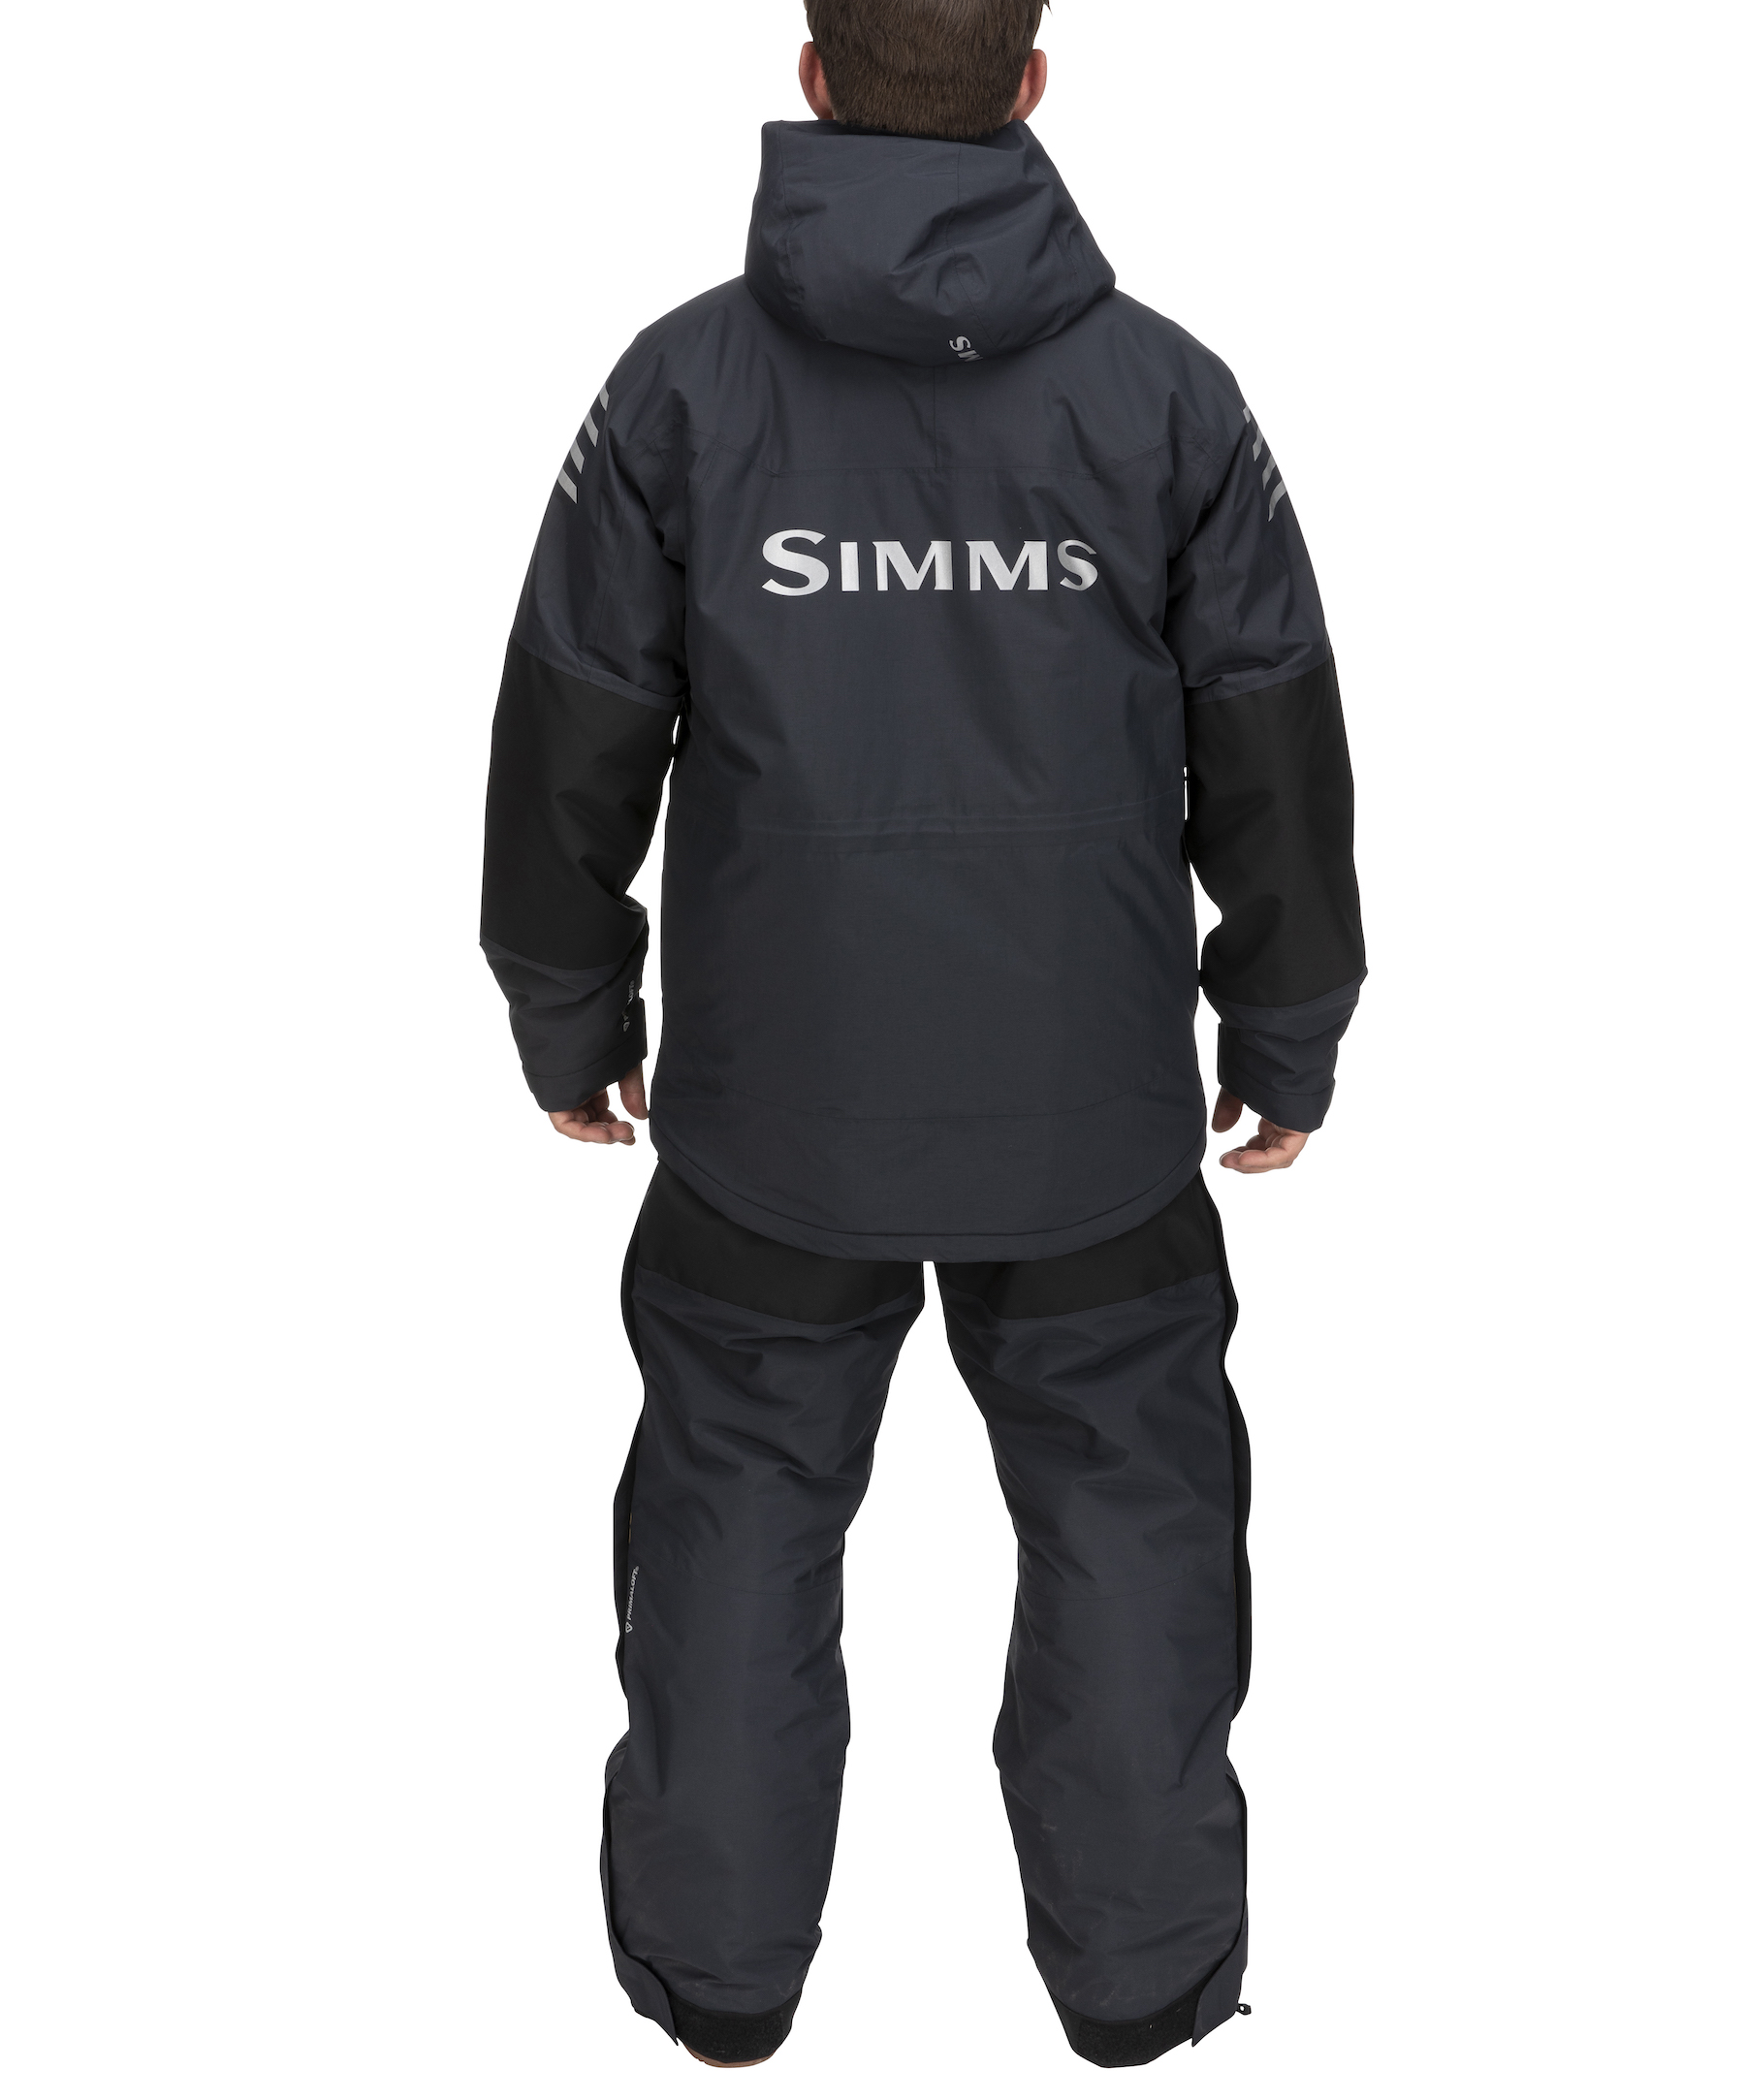 シムス SIMMS バルクレージャケット S 美品です。 - フィッシング